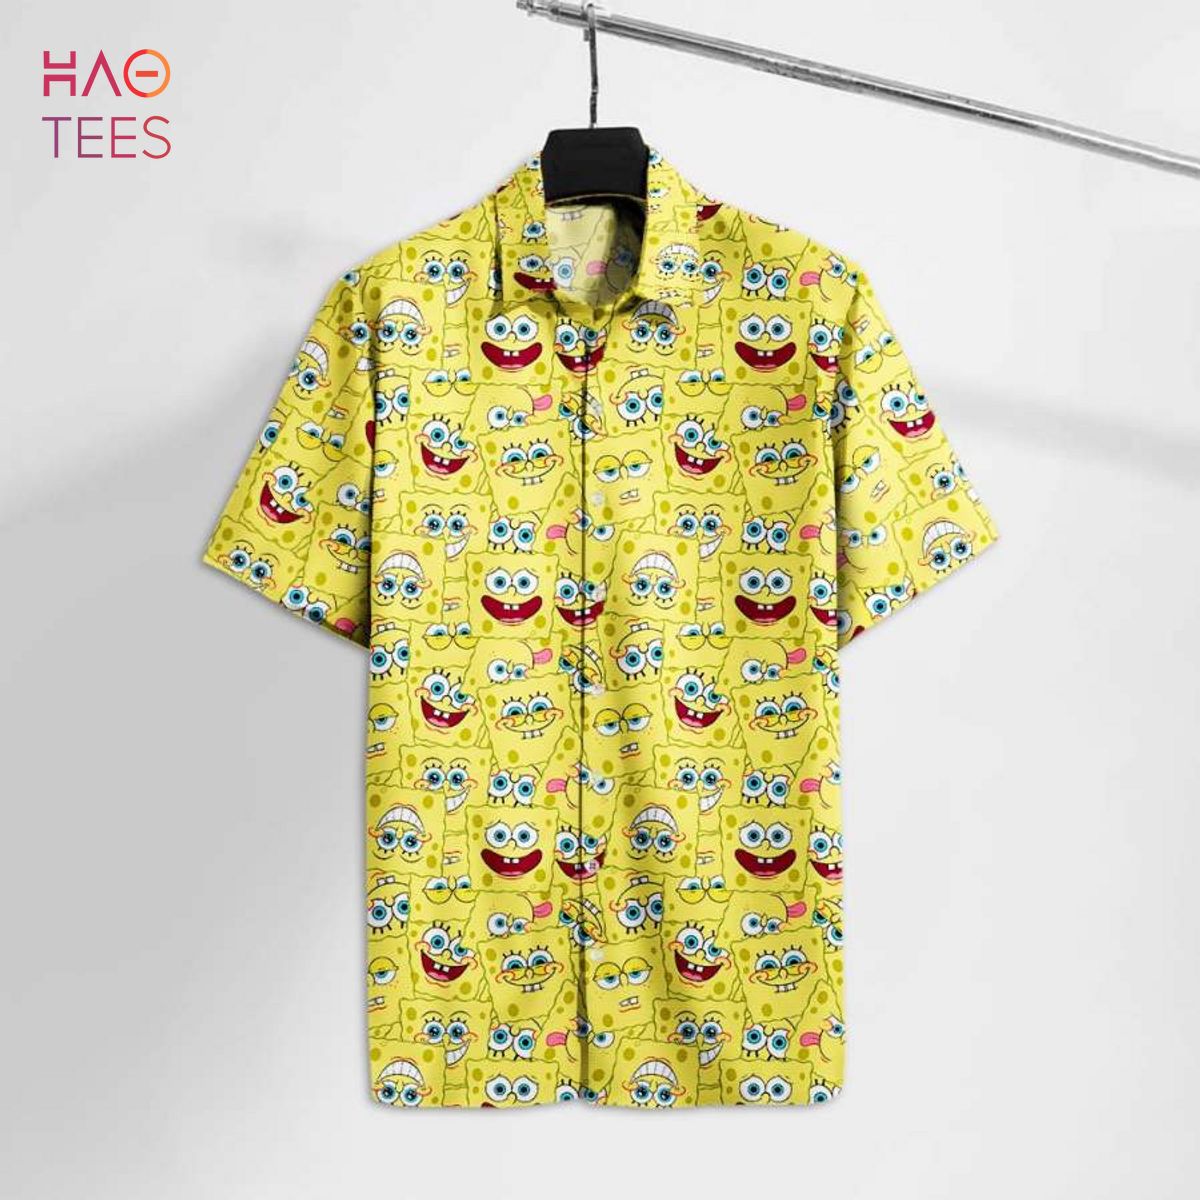 SquarePants Sponge Emoji Faces Hawaii Tshirt